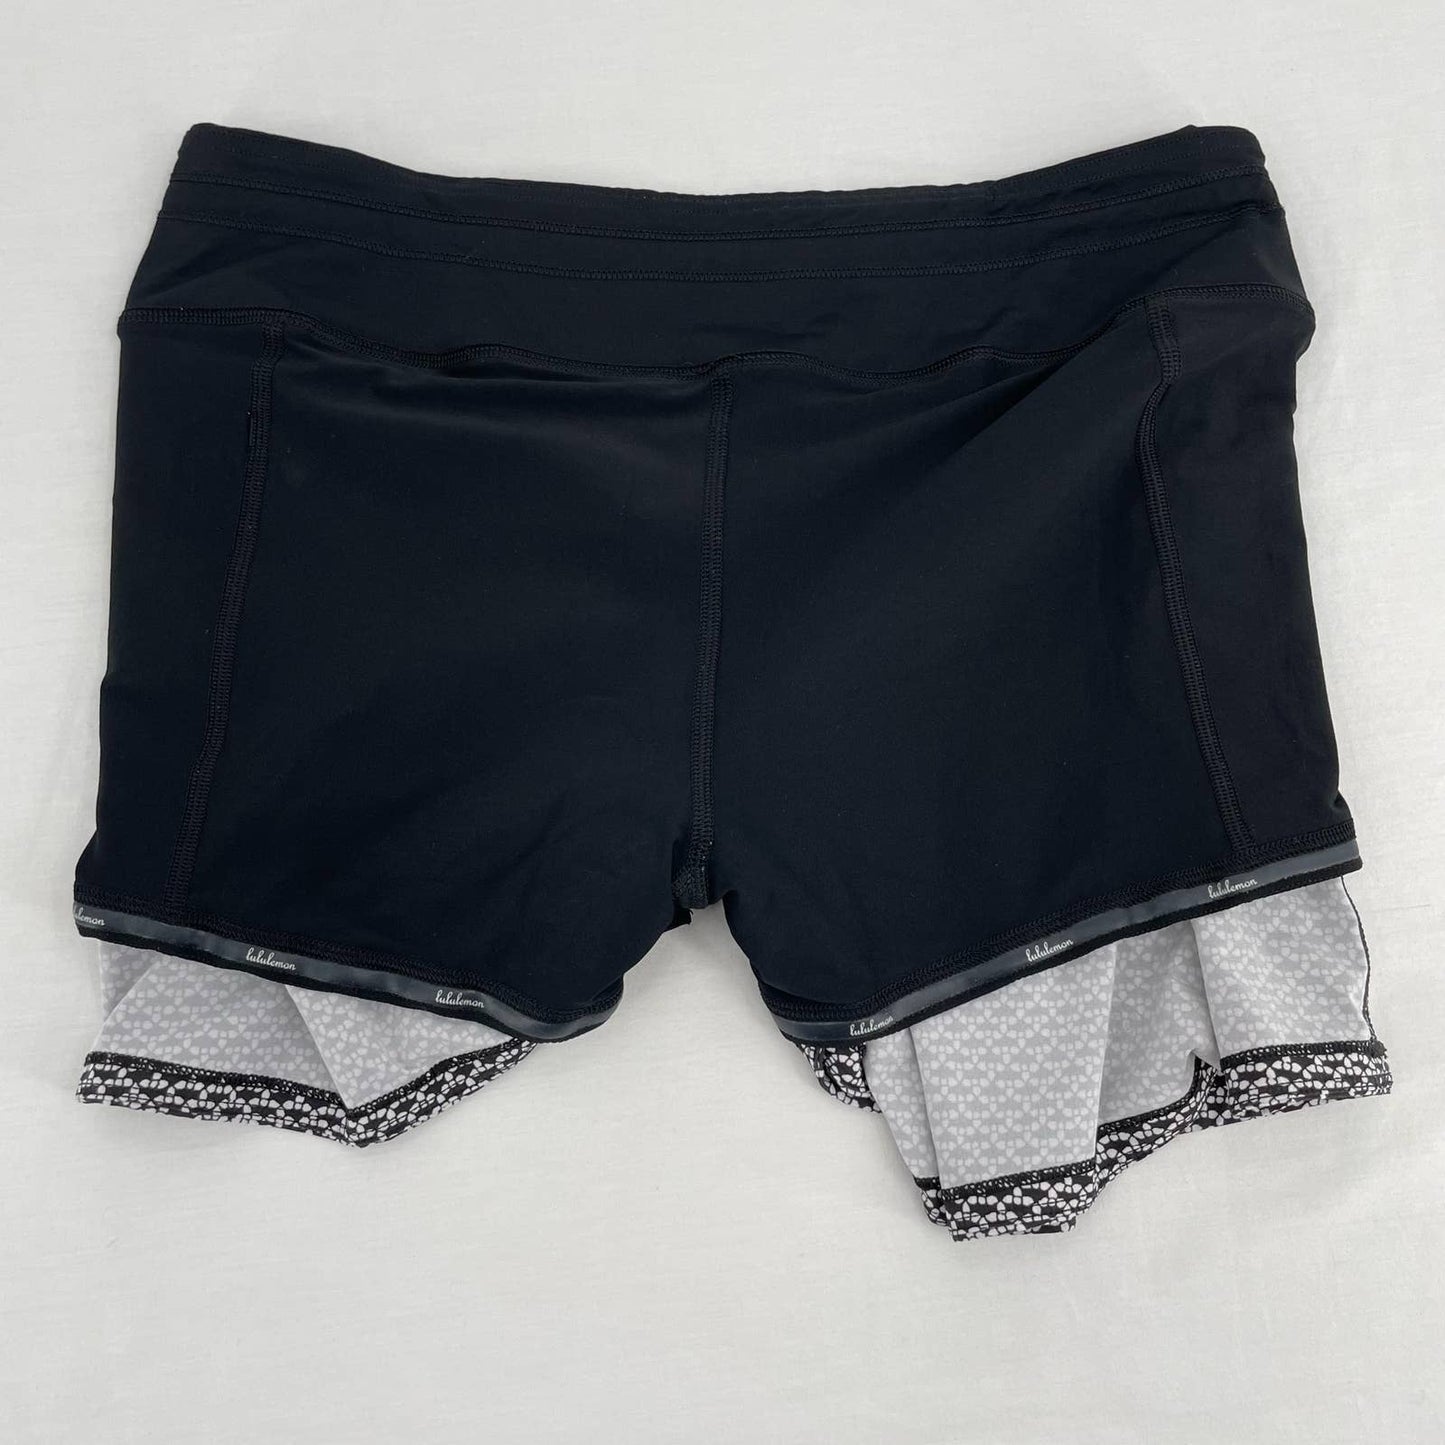 Lululemon Tall Pace Rival Skirt Monochromic Black White Pattern Active Skort Size 8